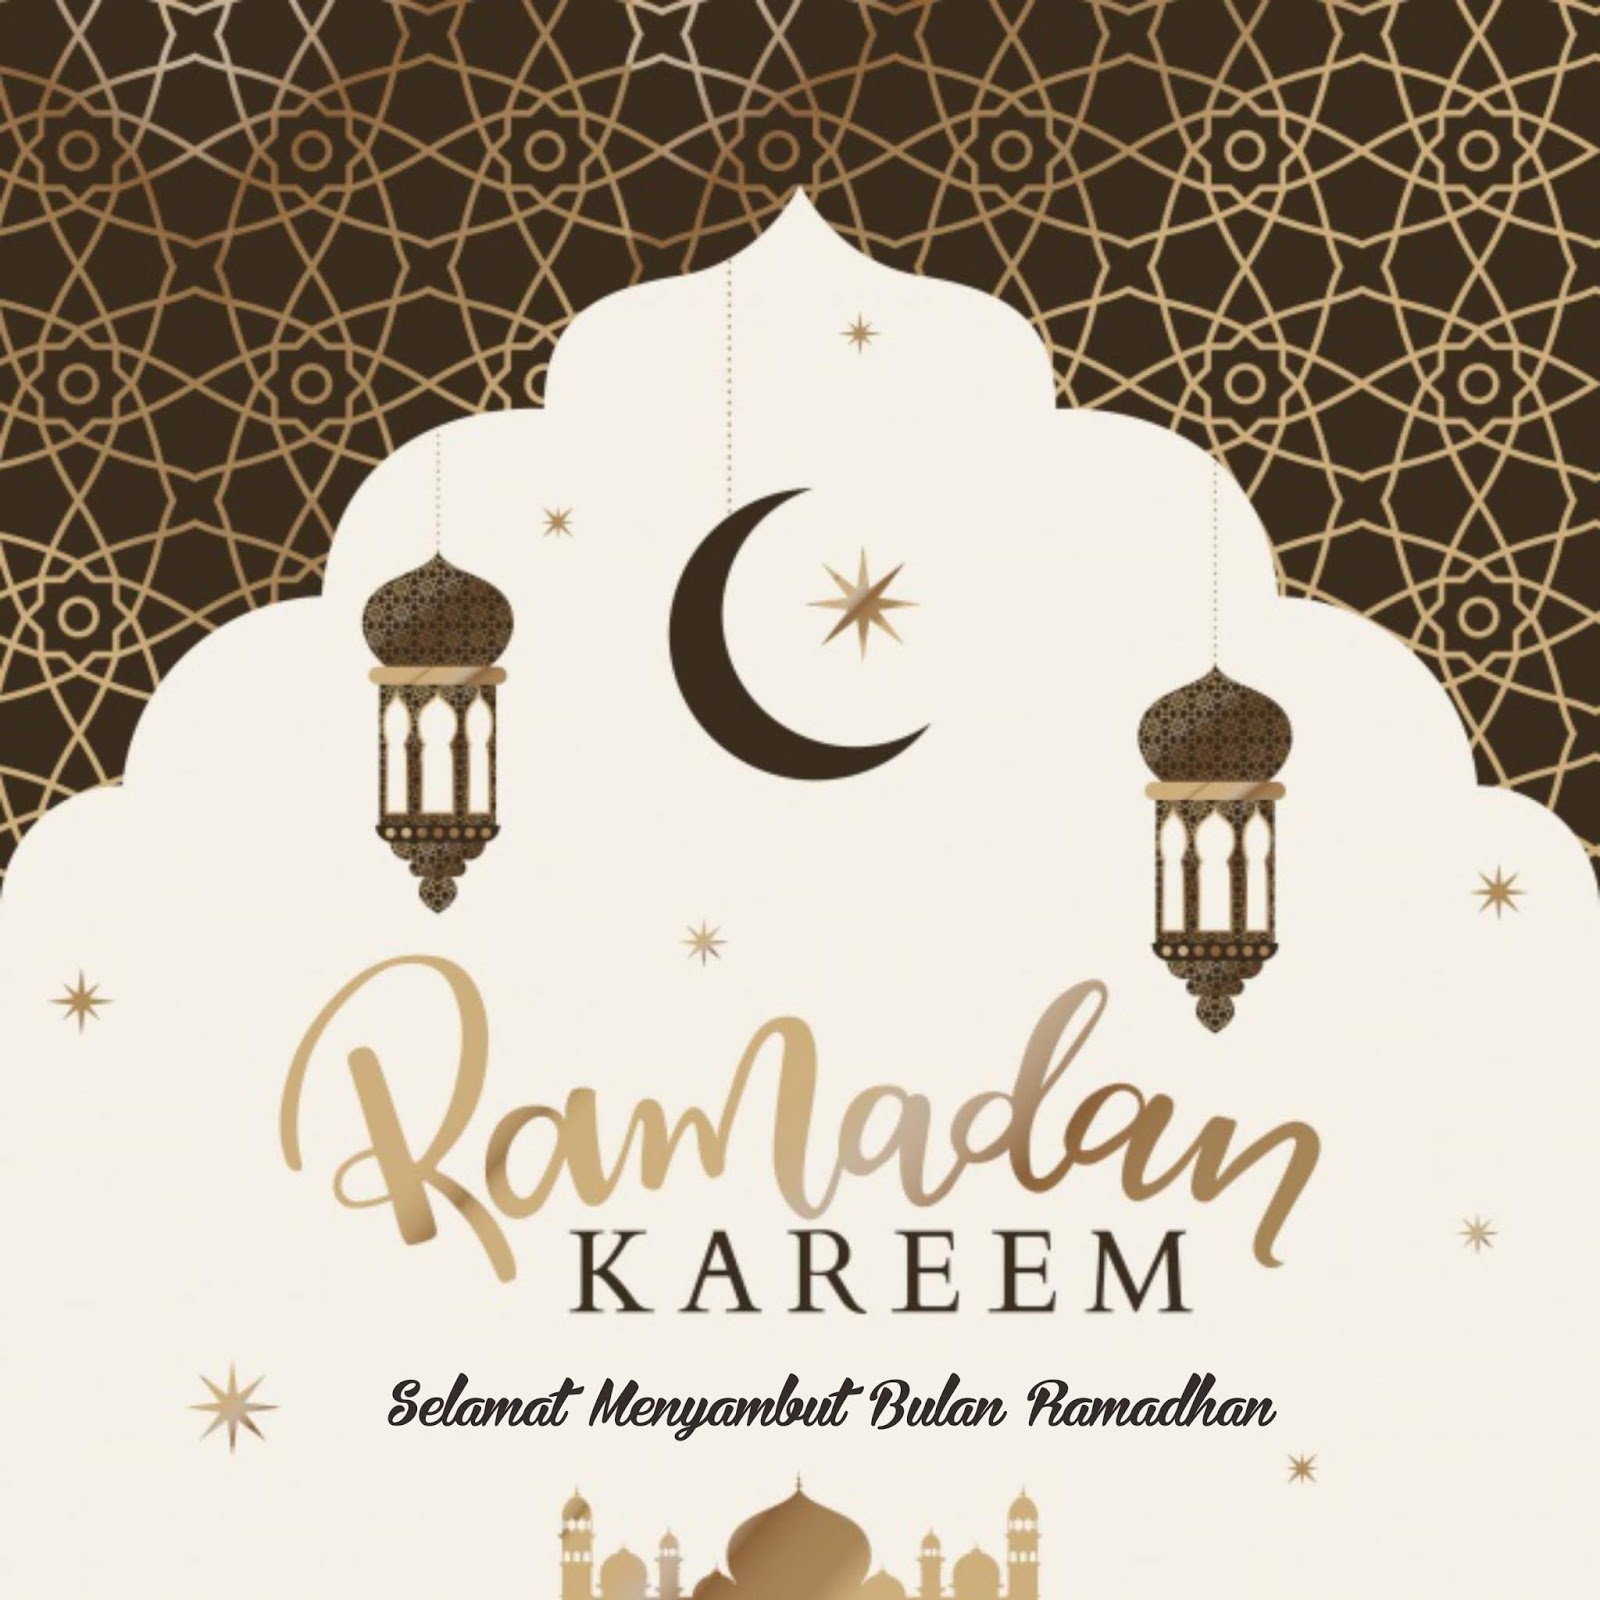 20 gambar ramadhan tiba terbaru 2020 download di sini gratis lihat